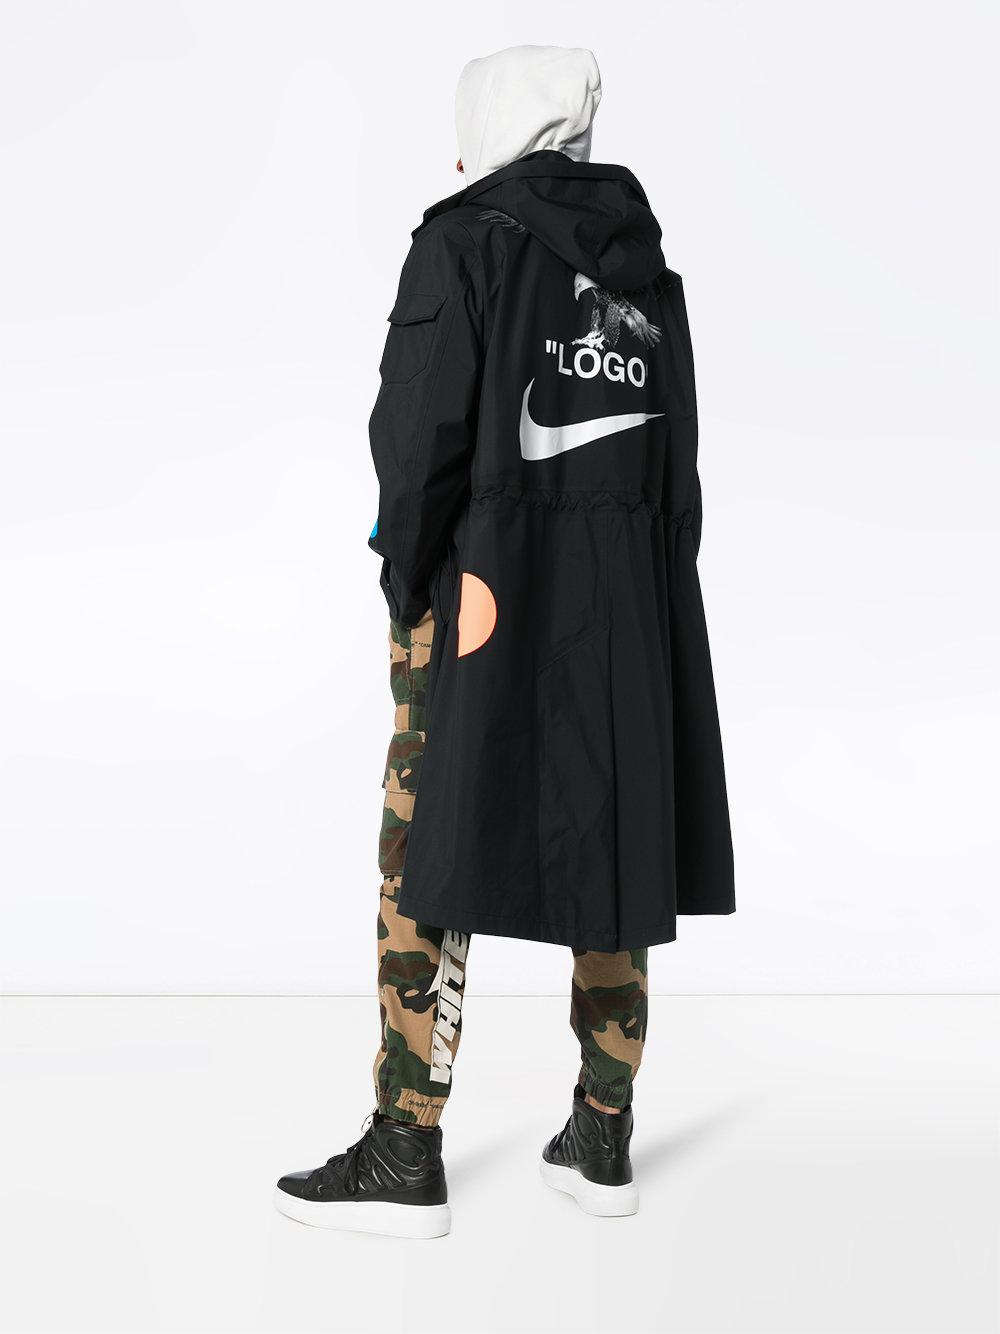 Nike X Off-white Logo Print Hooded Long Jacket in Black for Men - Lyst